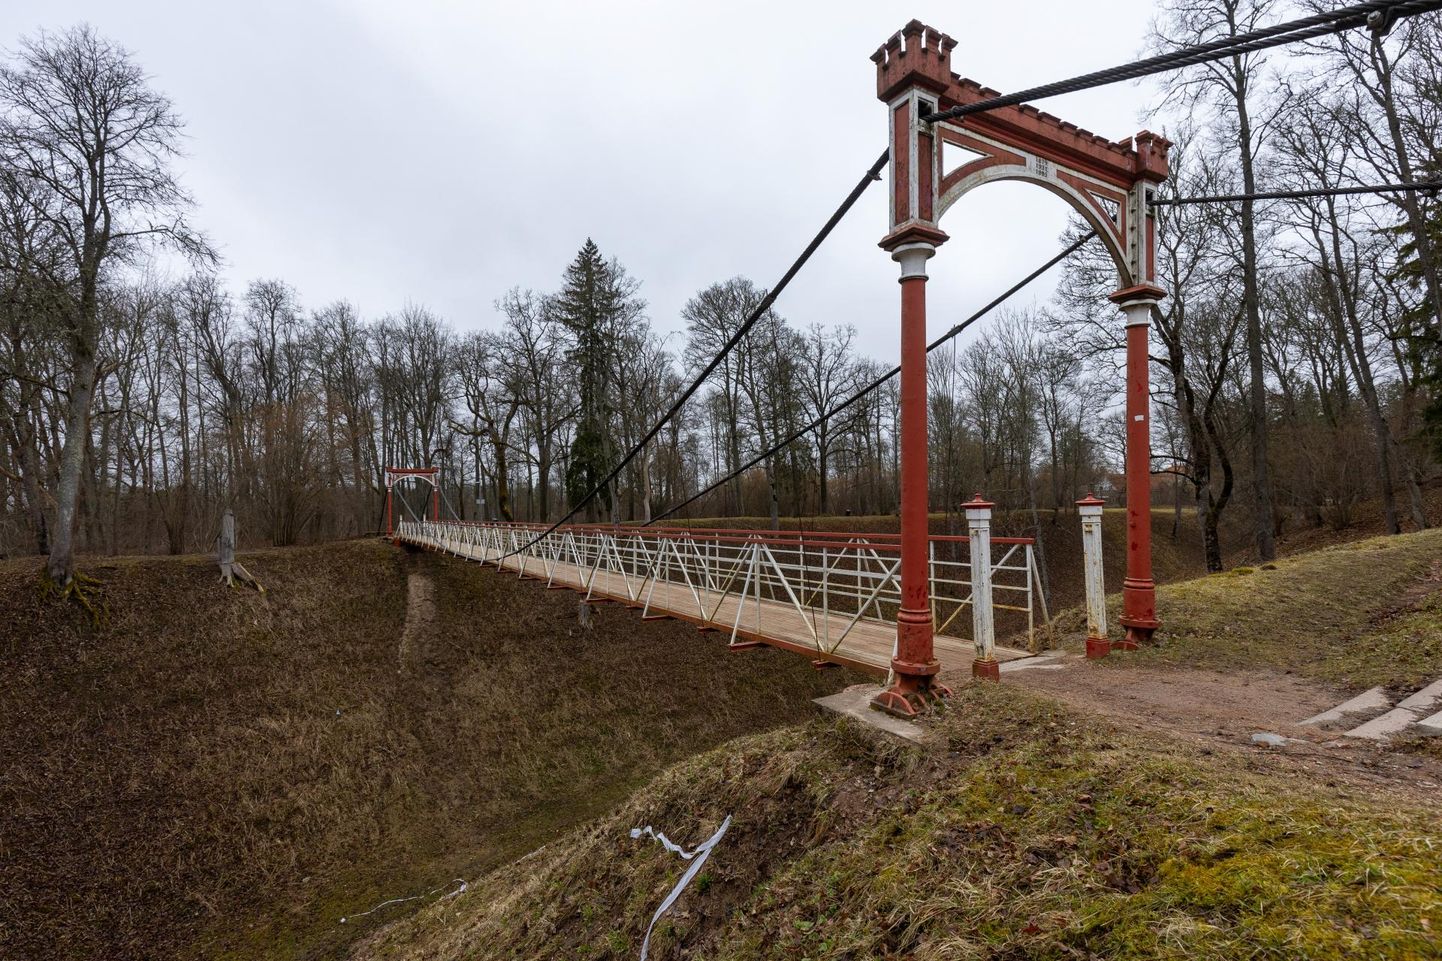 Viljandi Linnahooldus tahaks rippsillale anda uue sära. Viimati uuendati silda põhjalikult 1995. aastal.